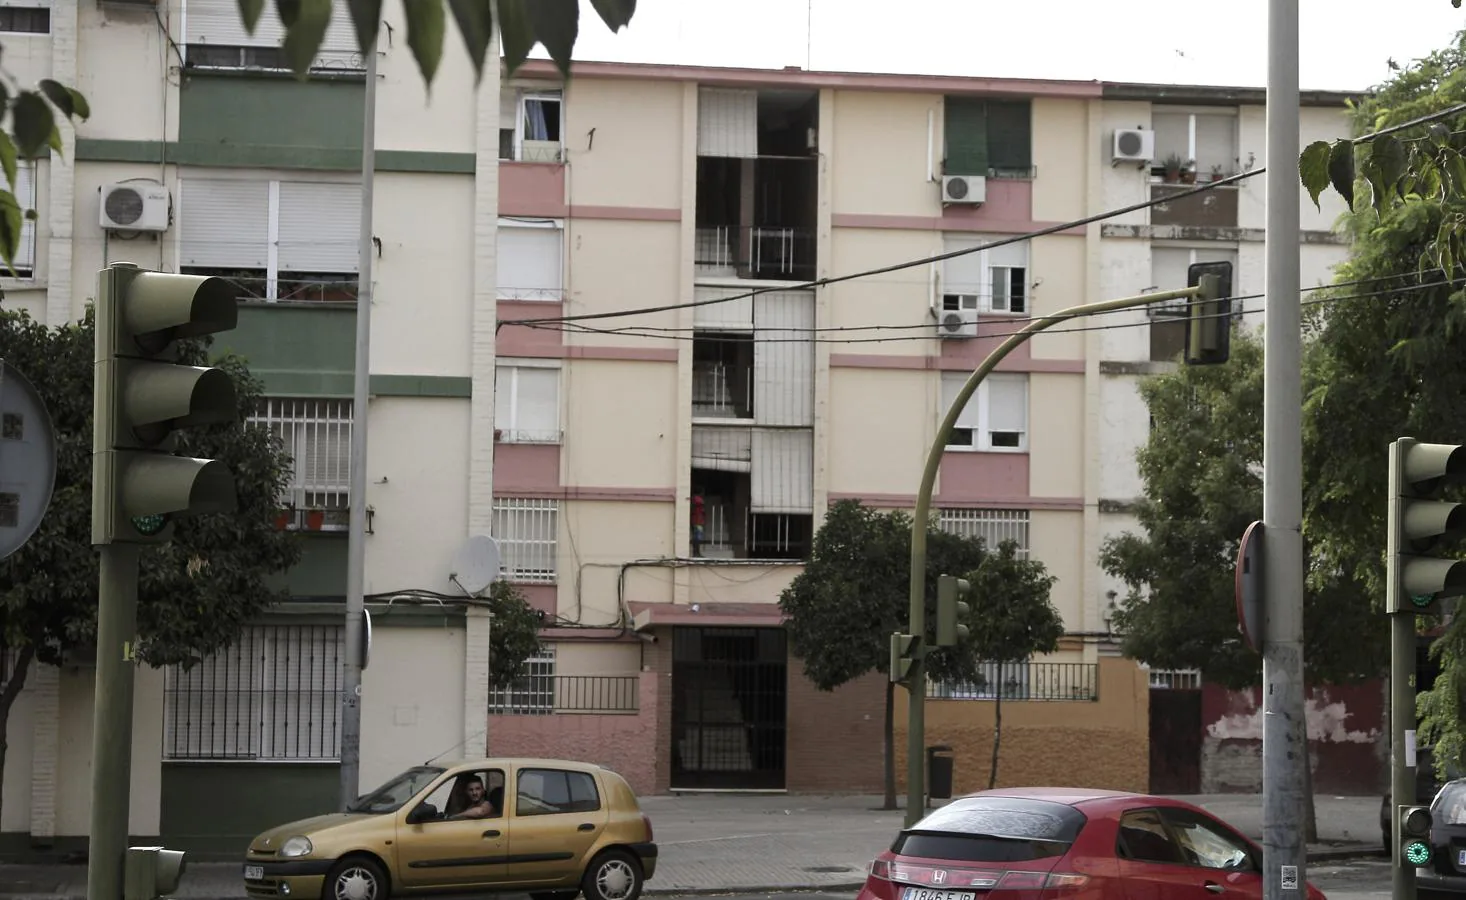 Un recorrido por la barriada sevillana de los pisos de mil euros